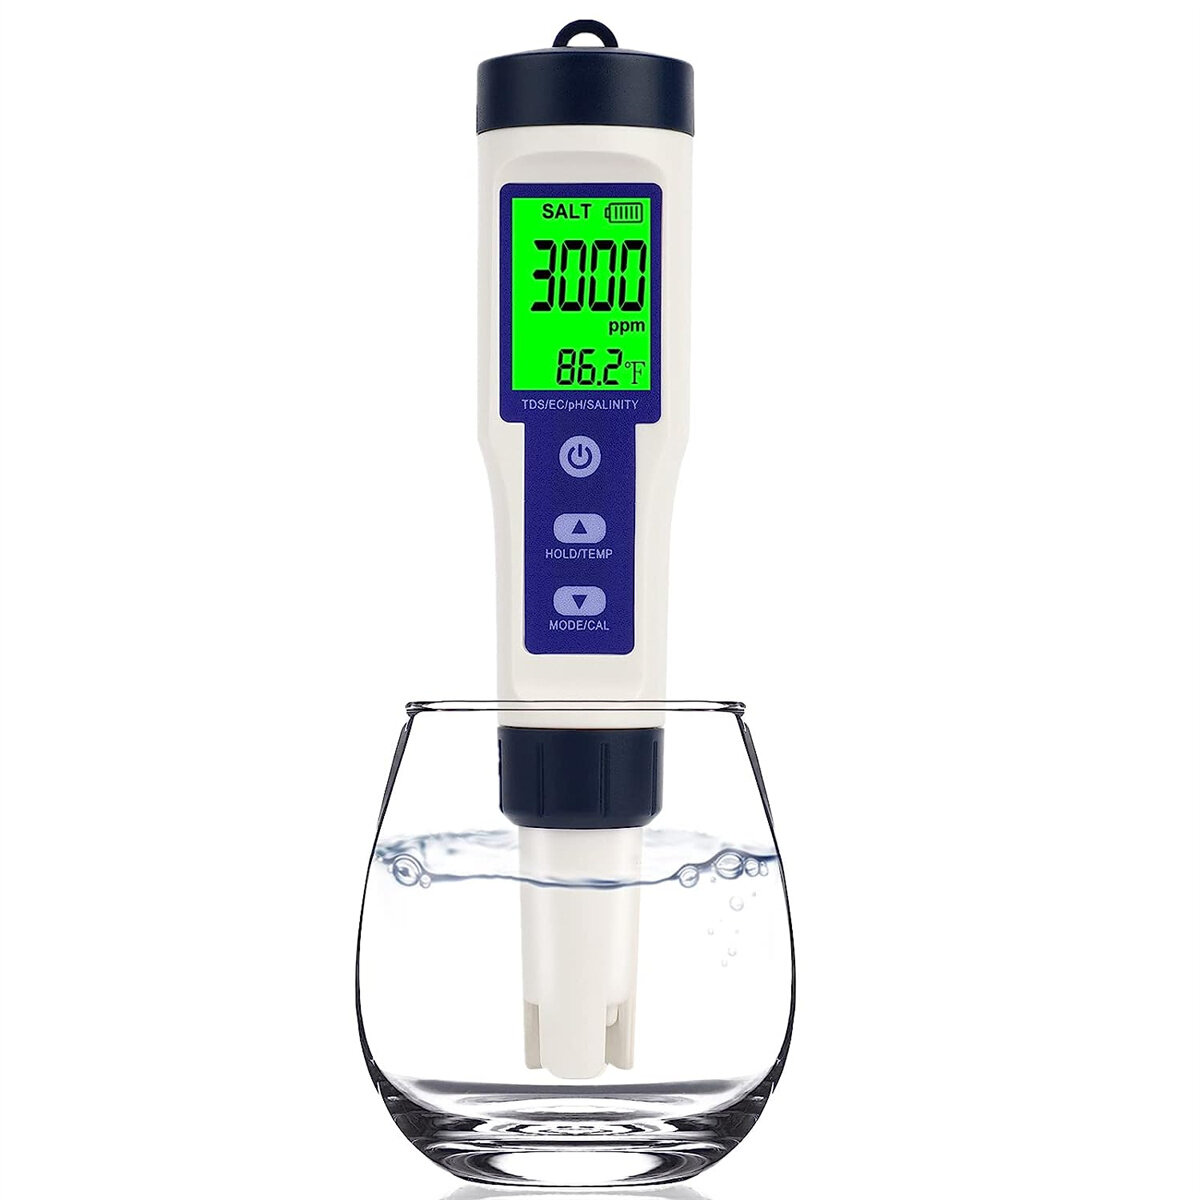 

5 in1 Pool Salt Tester Digital Salinity Meter High Accuracy IP67 Waterproof with PPM PPT % Display Auto-Off Energy Effic